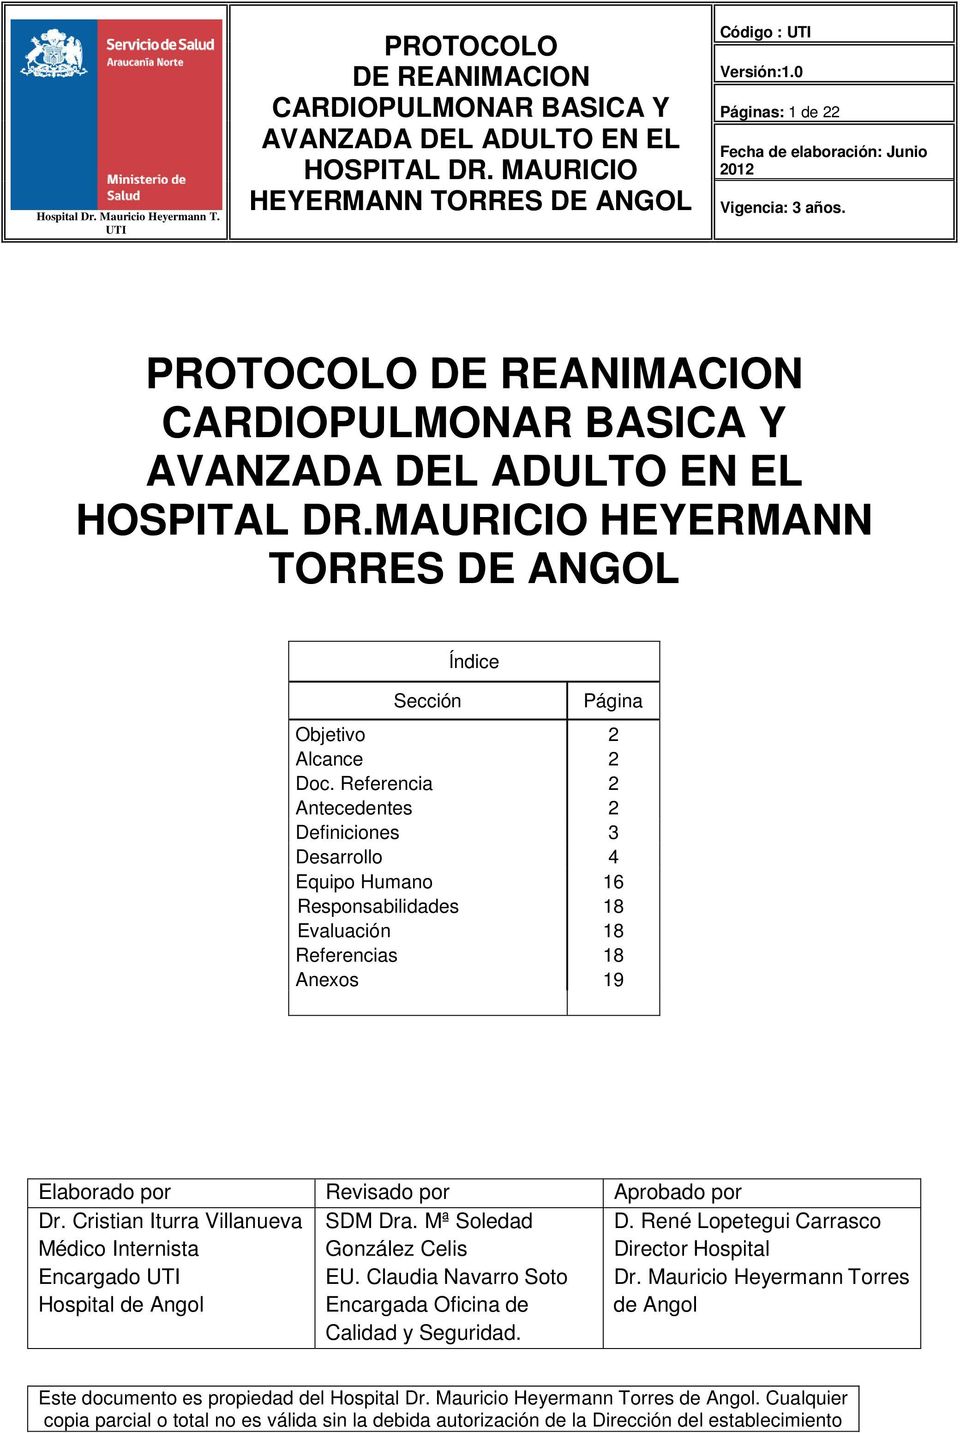 Elaborado por Revisado por Aprobado por Dr. Cristian Iturra Villanueva Médico Internista Encargado Hospital de Angol SDM Dra.